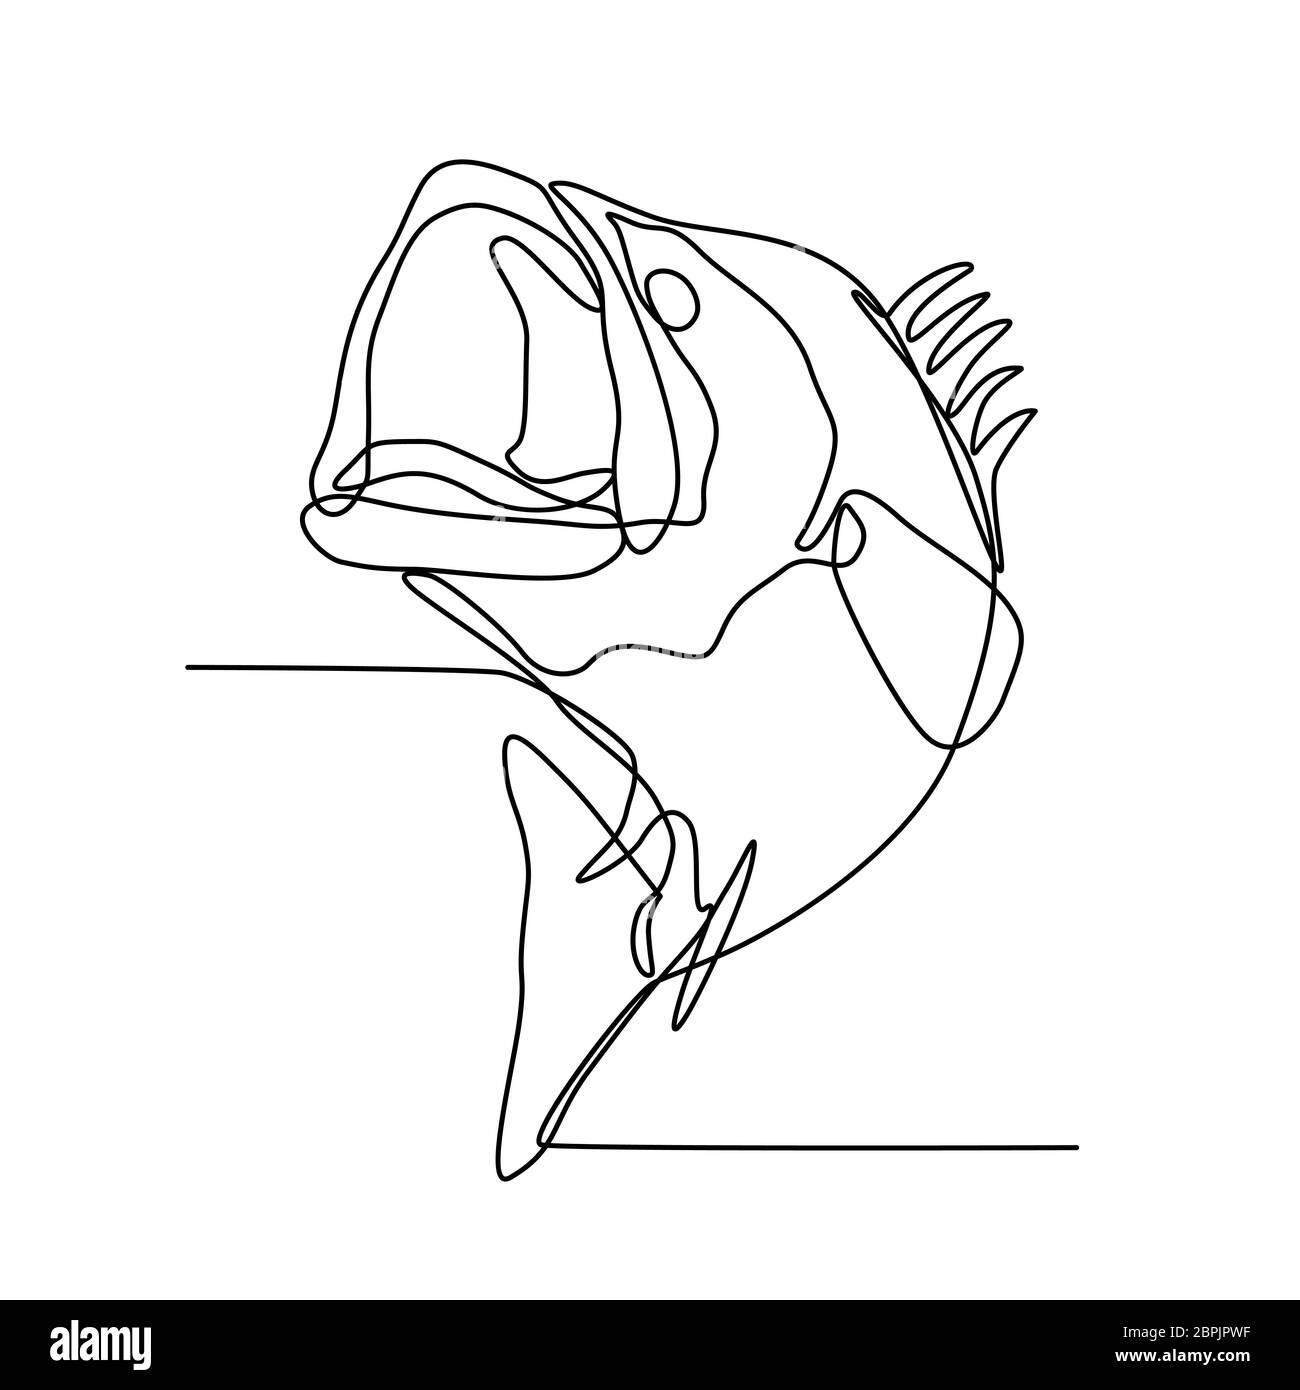 Linea continua illustrazione di LARGEMOUTH BASS, gamefish di acqua dolce che è una specie di black bass nativa per il Nord America, il salto fatto in nero Foto Stock